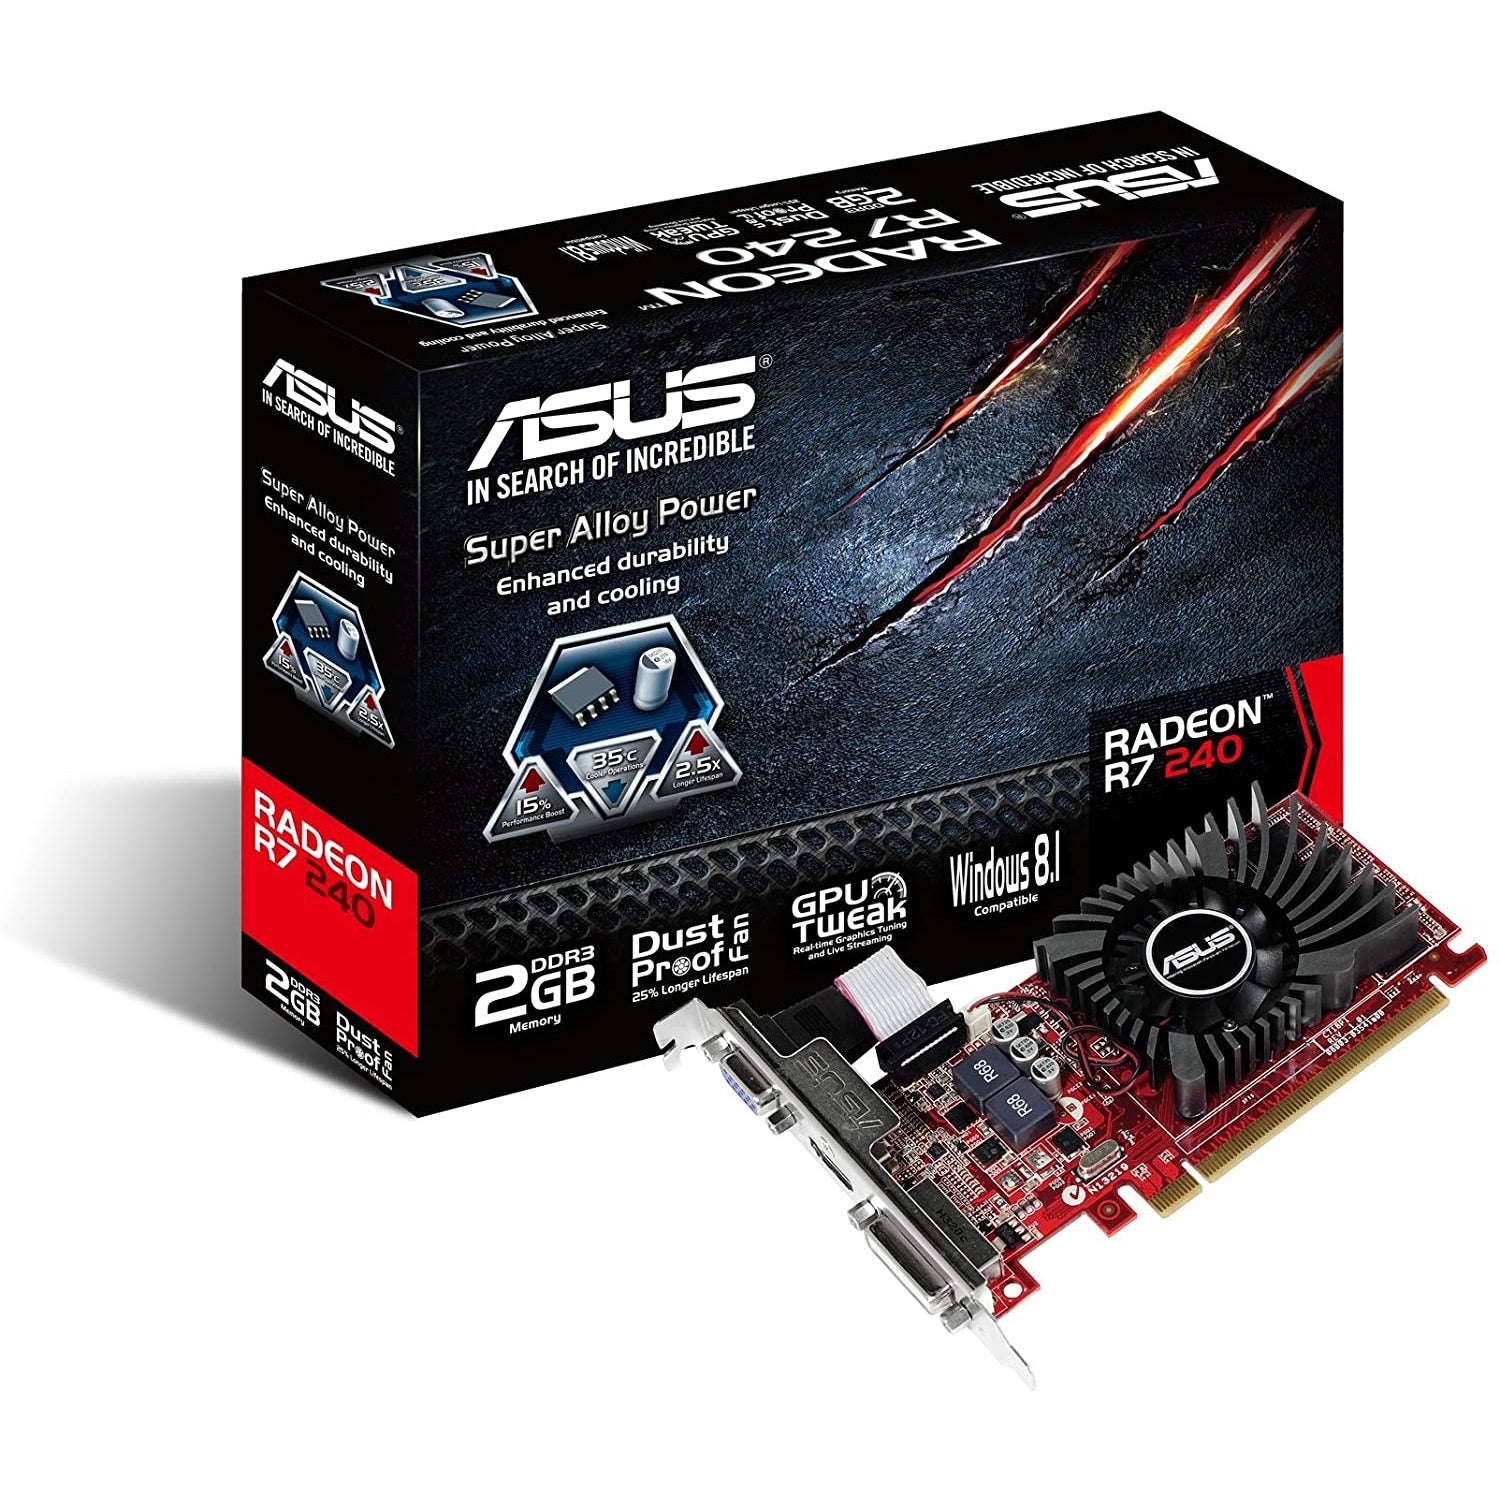 ASUS AMD Radeon R7 240 2 GB DDR3 Graphics Card (PCI Express 3.0, HDMI, DVI-D, 128-Bit, Dust-Proof Fan, GPU Tweak Utility)